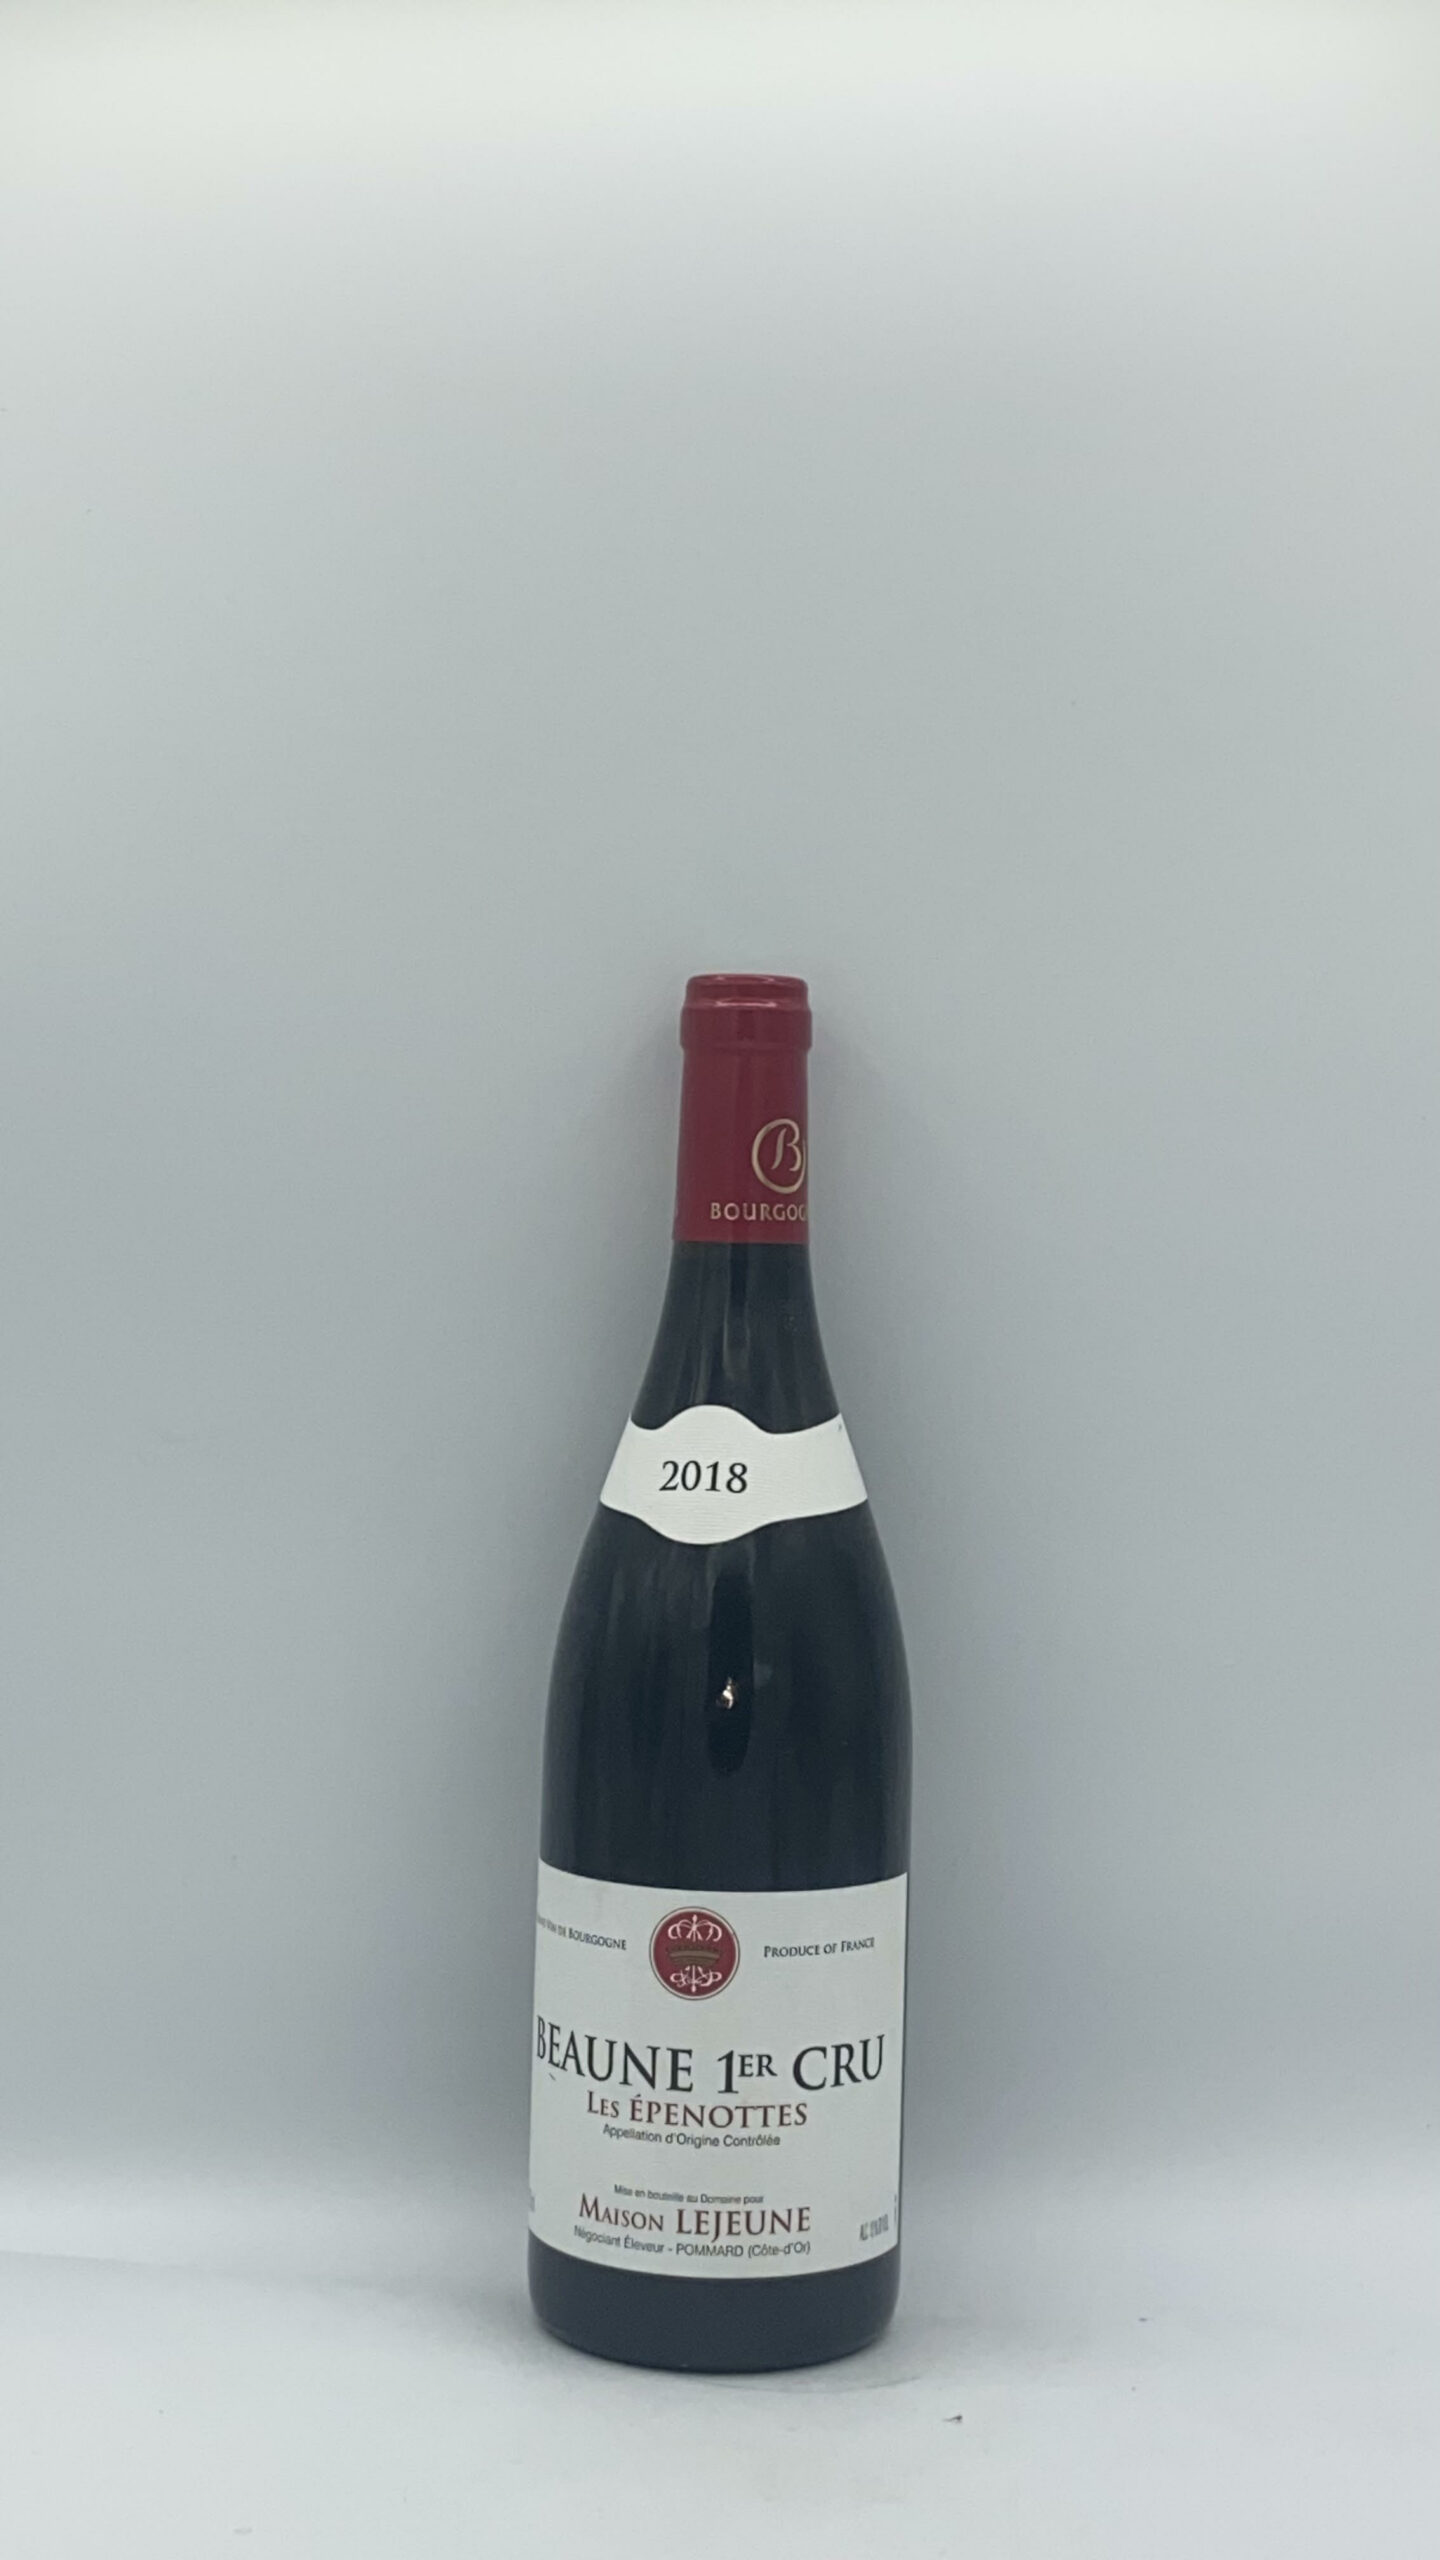 Bourgogne Beaune 1er cru “Epenottes” 2018 Domaine Lejeune